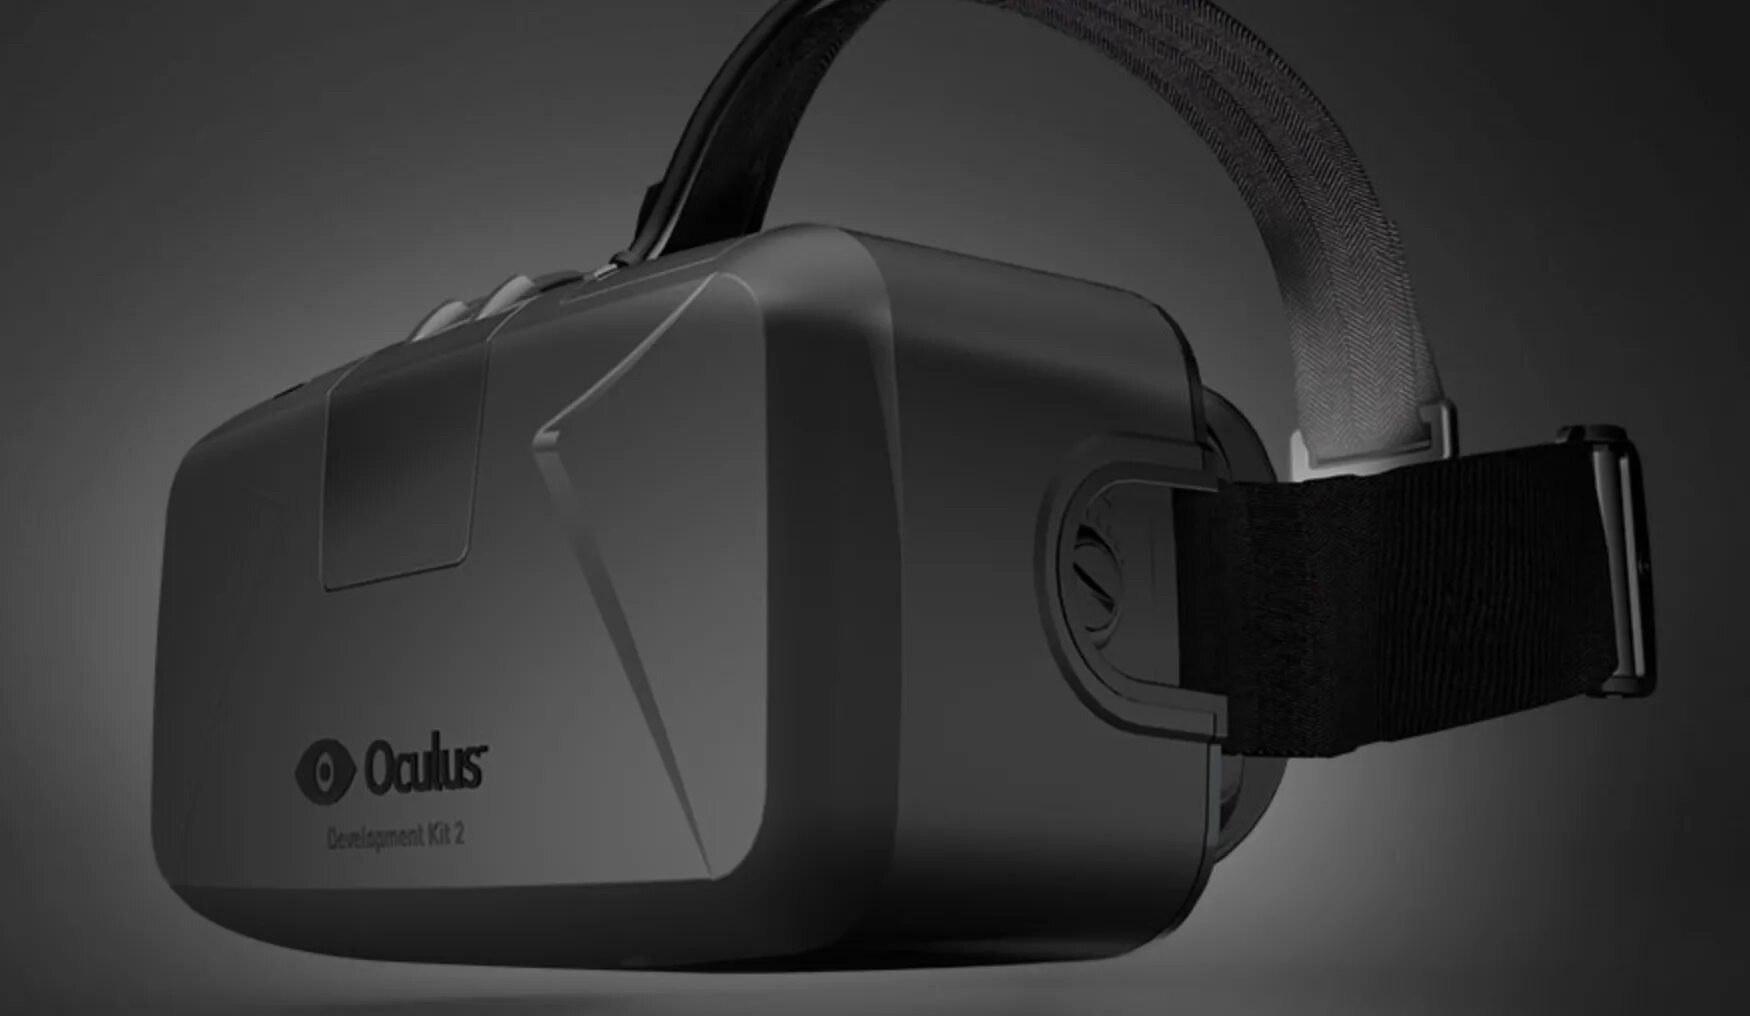 Vr пенза. Очки Oculus Rift dk2. Очки Окулус рифт 2. Шлем dk2 VR. Шлем виртуальной реальности Oculus Rift dk2.